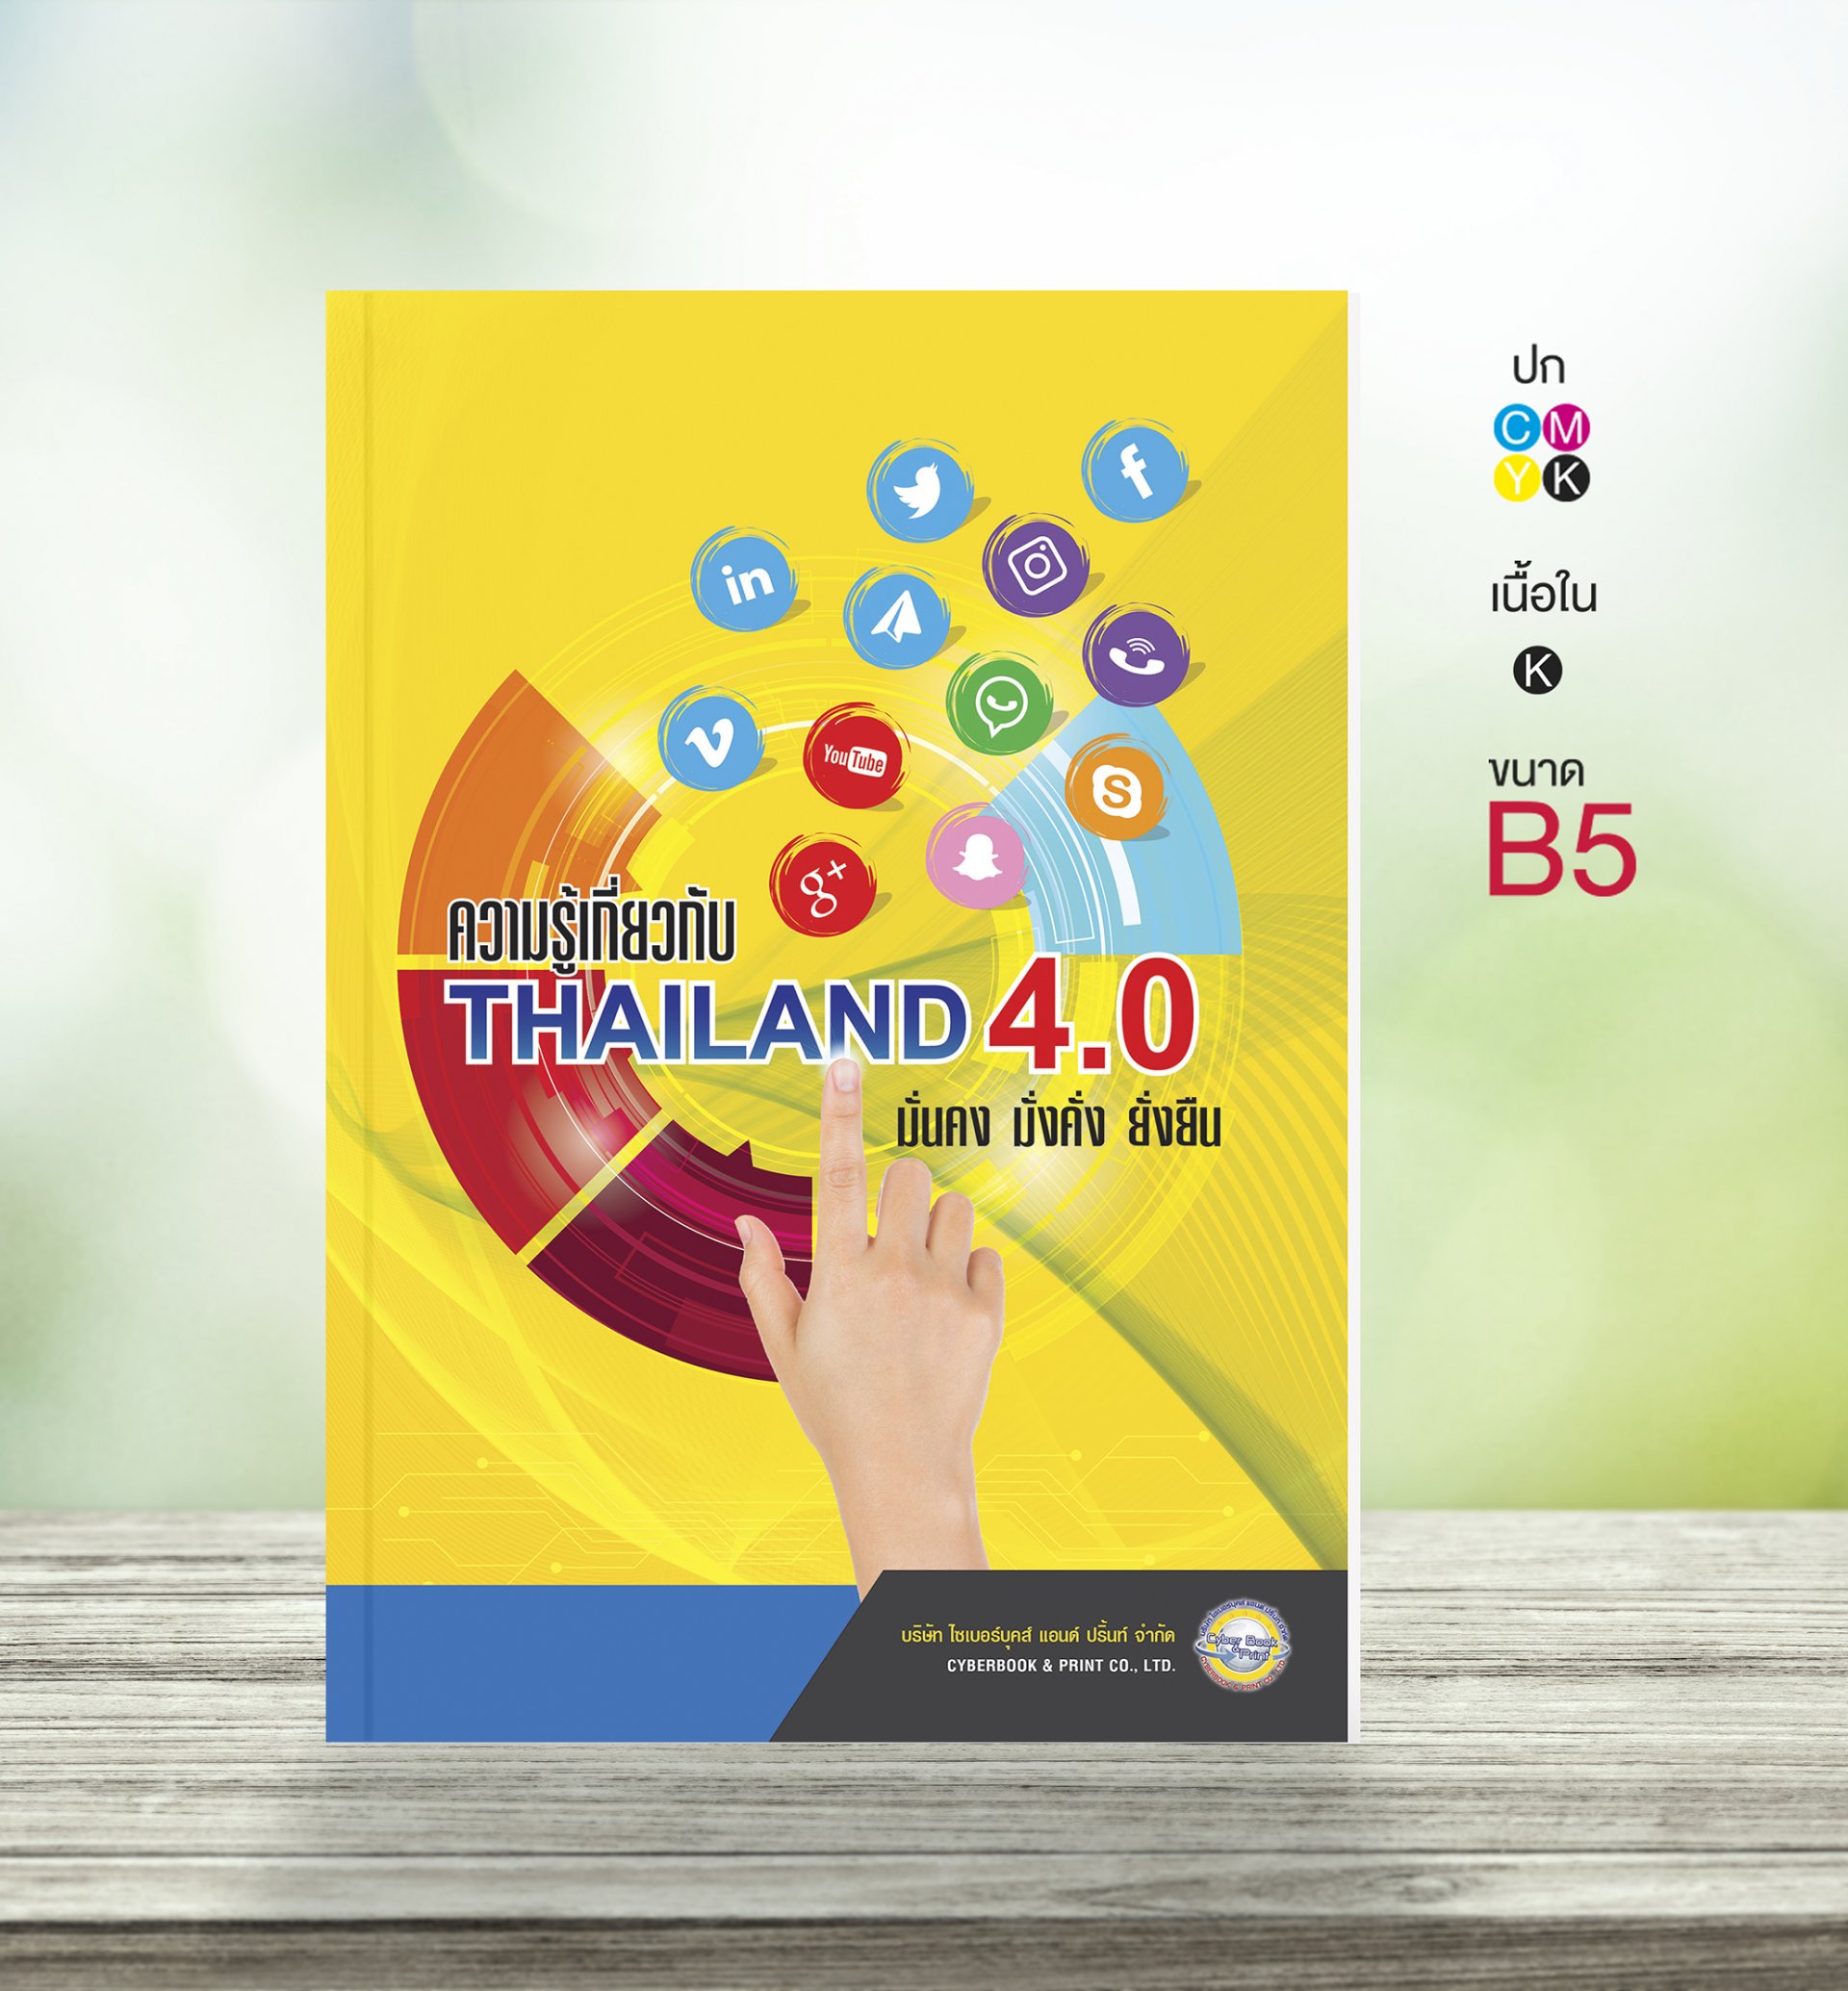 ความรู้เกี่ยวกับ Thailand 4.0